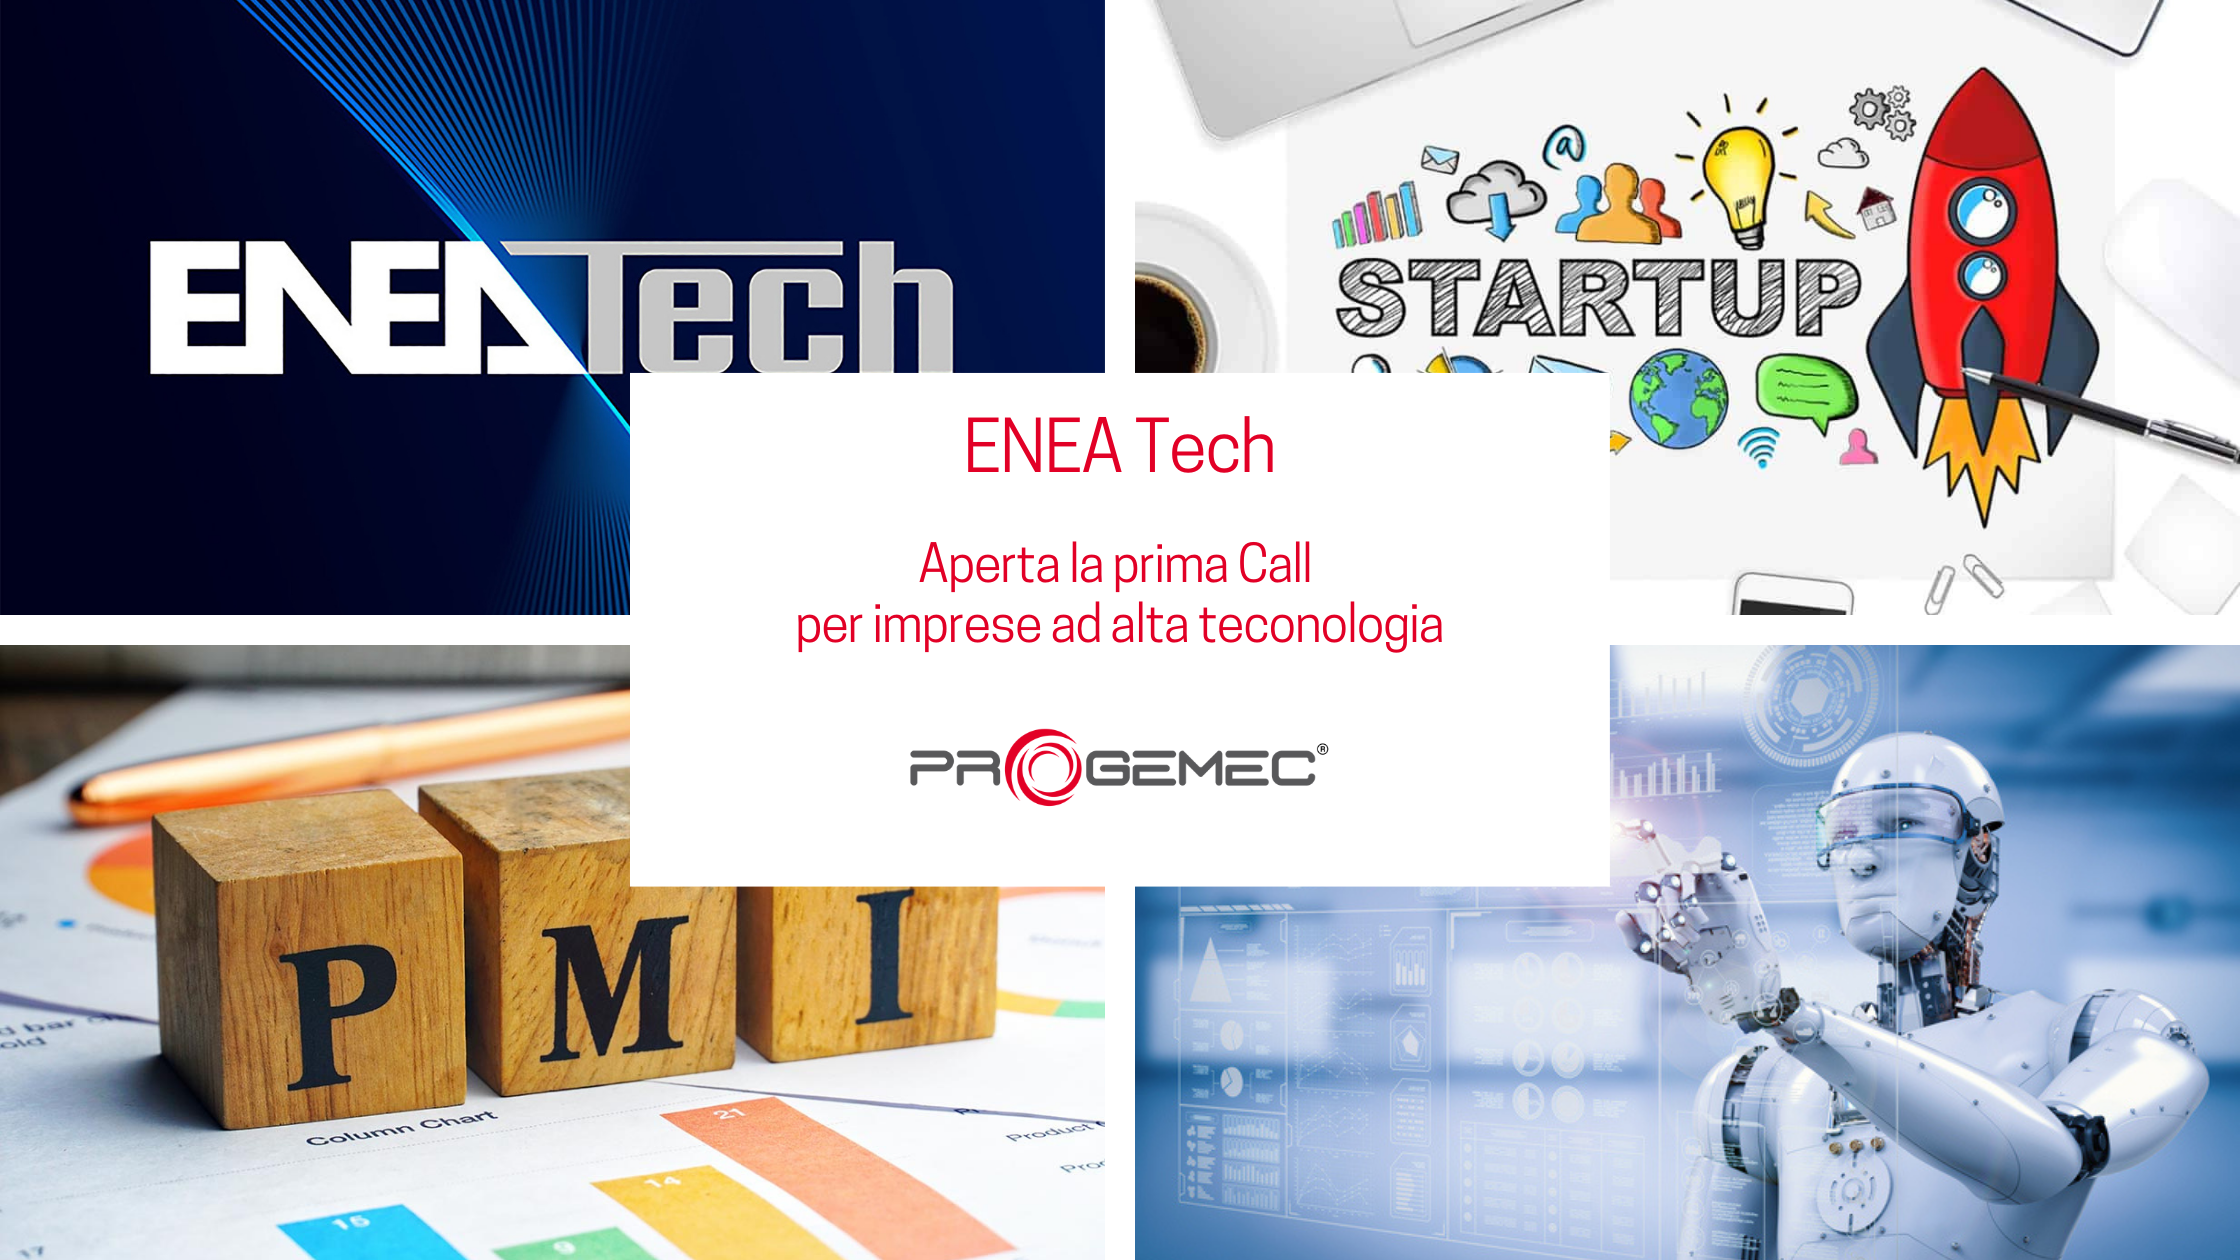 ENEA Tech - Aperta la prima Call